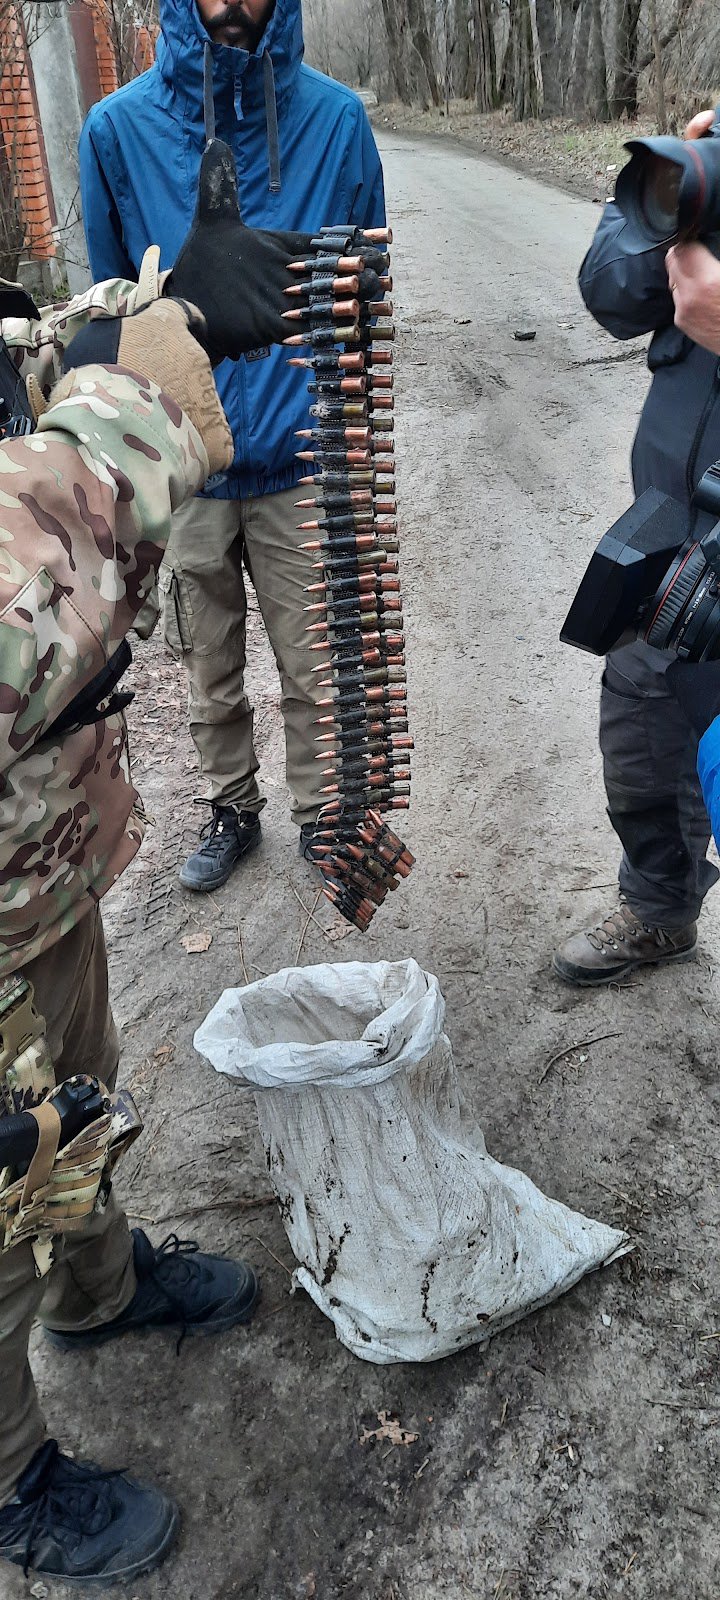 Місцевий мешканець поцупив в росіян дві стрічки для кулементу - майже 500 патронів